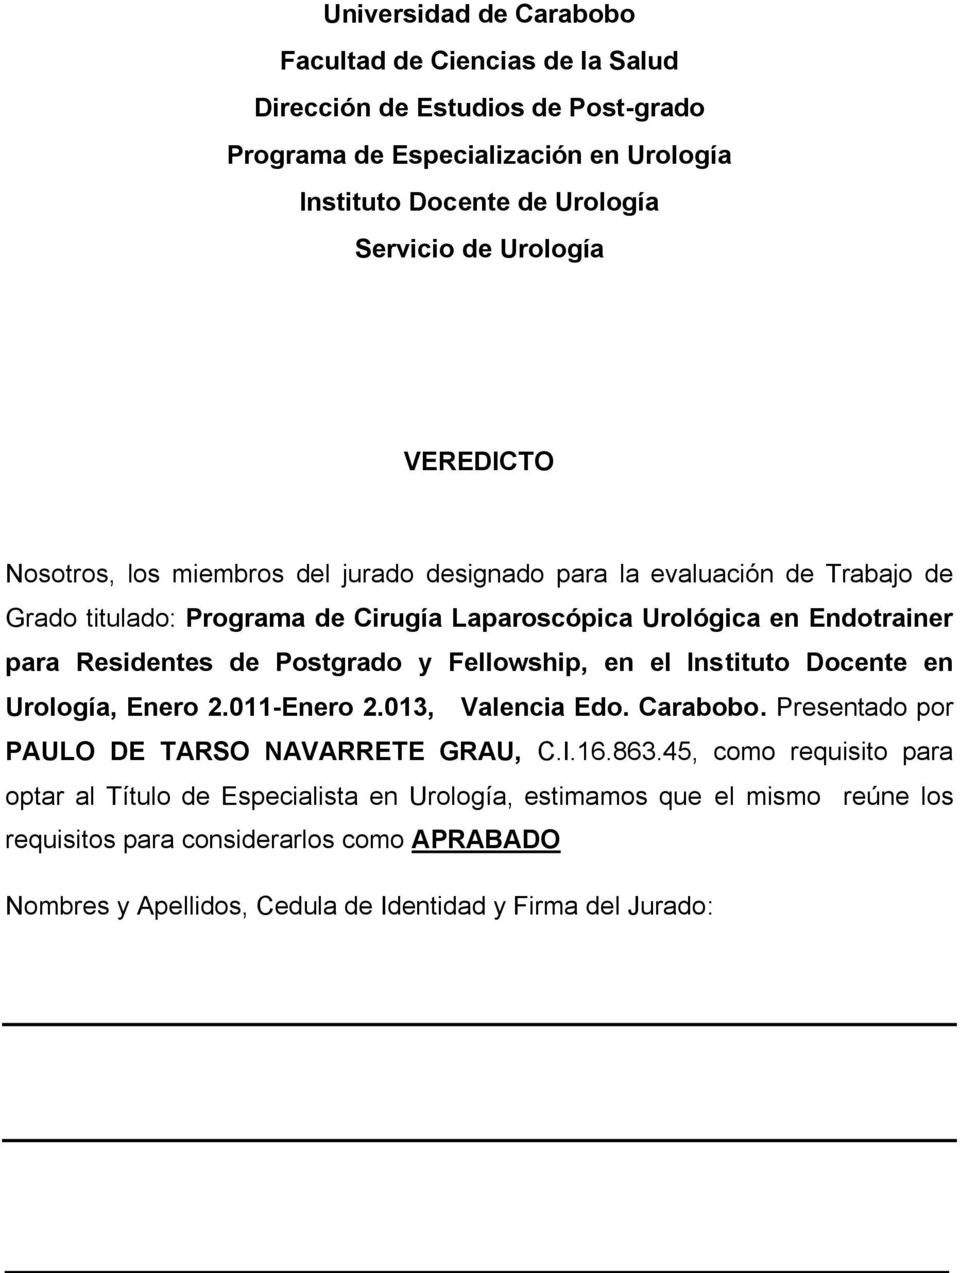 Postgrado y Fellowship, en el Instituto Docente en Urología, Enero 2.011-Enero 2.013, Valencia Edo. Carabobo. Presentado por PAULO DE TARSO NAVARRETE GRAU, C.I.16.863.